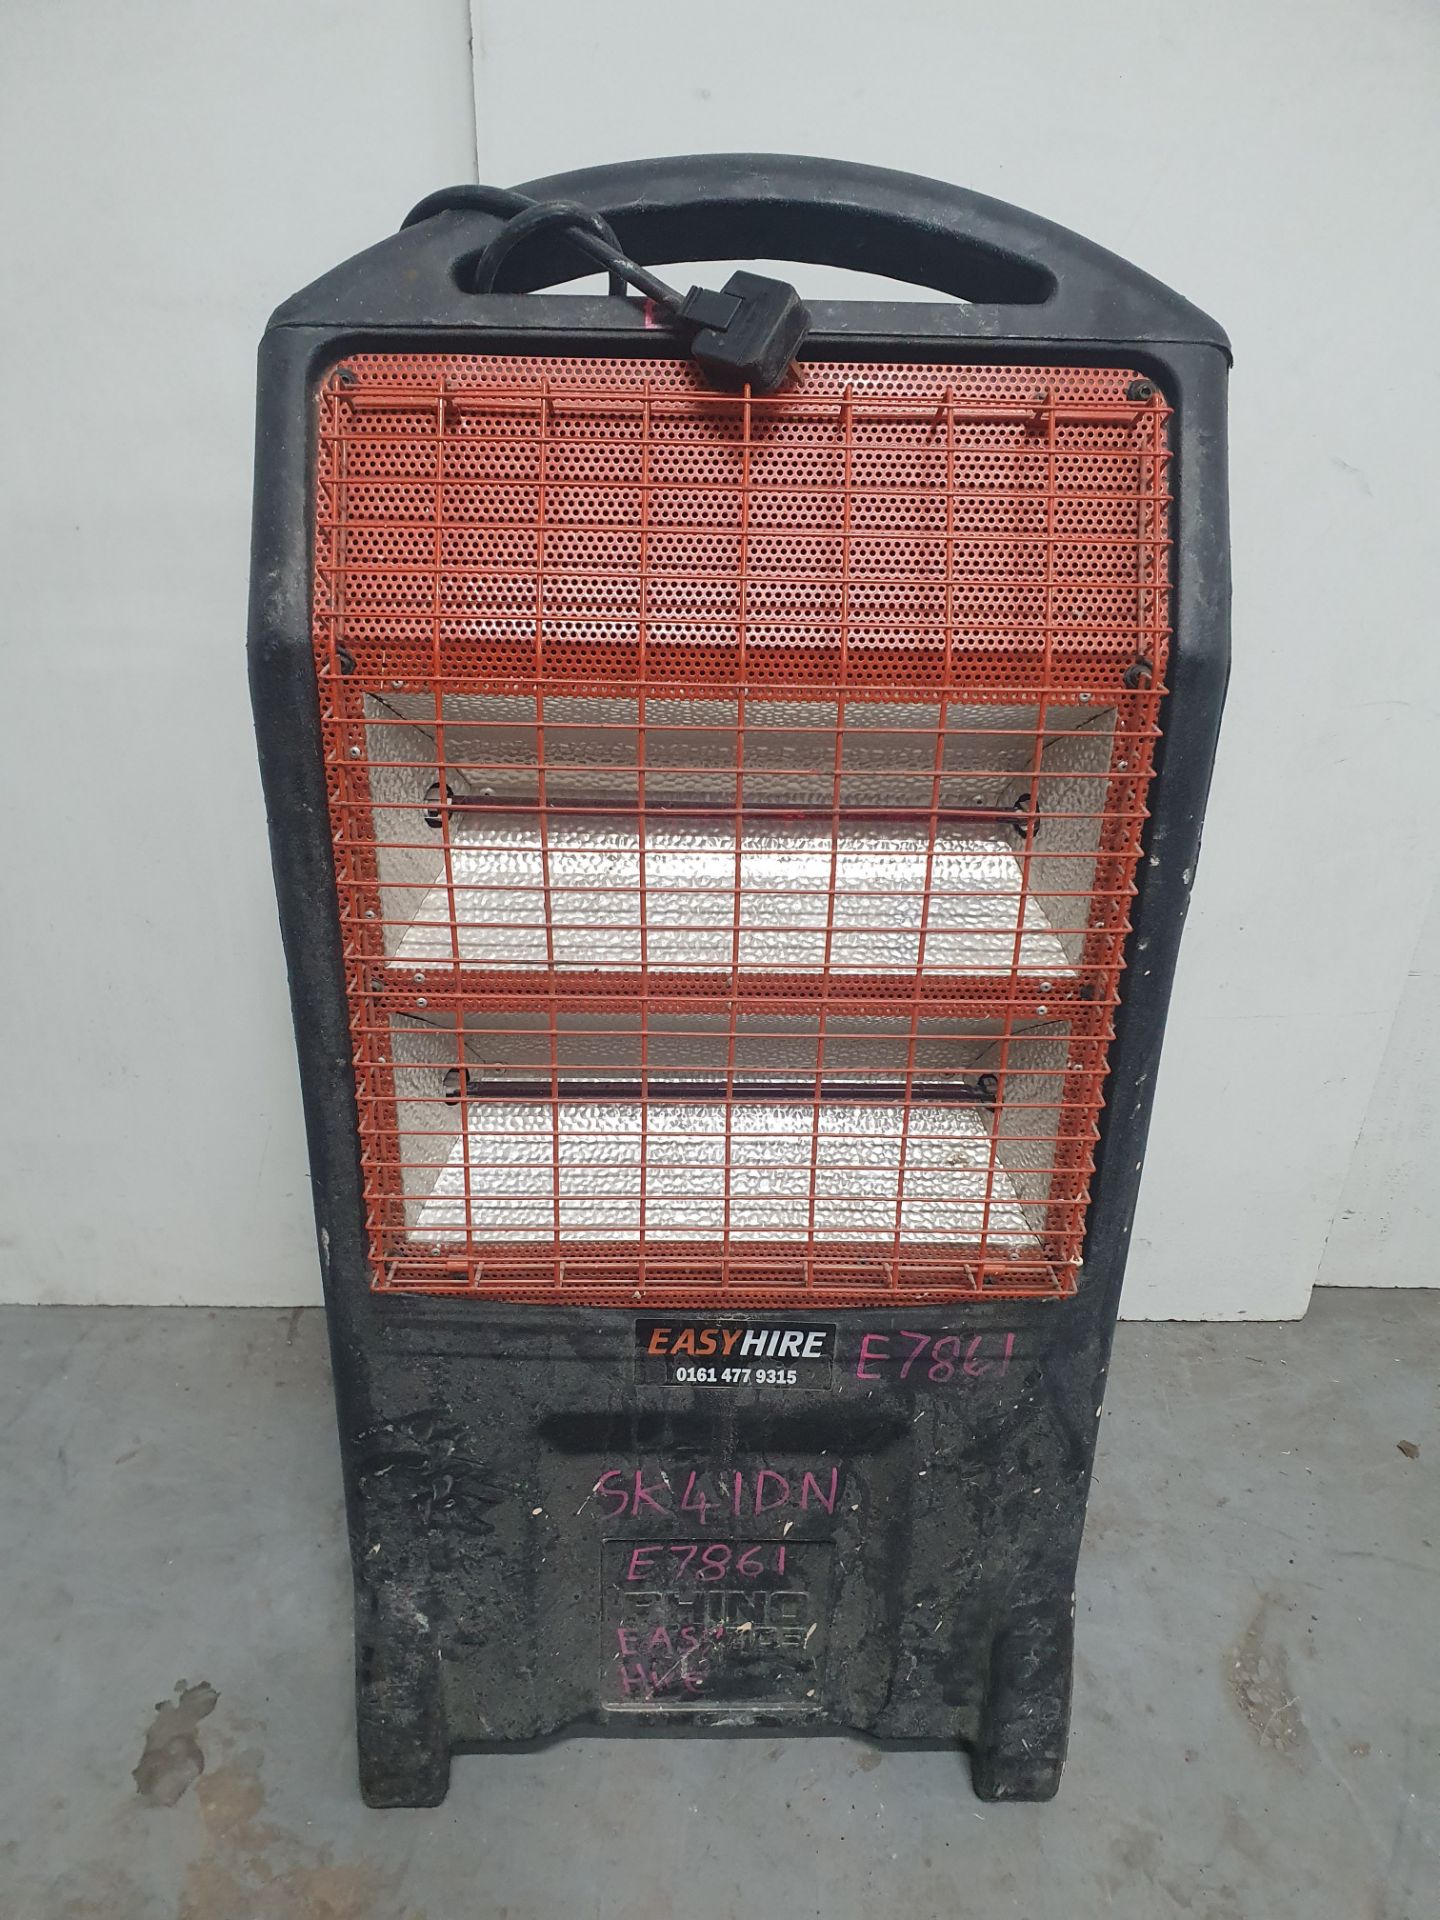 Rhino TQ3 Infrared Heater